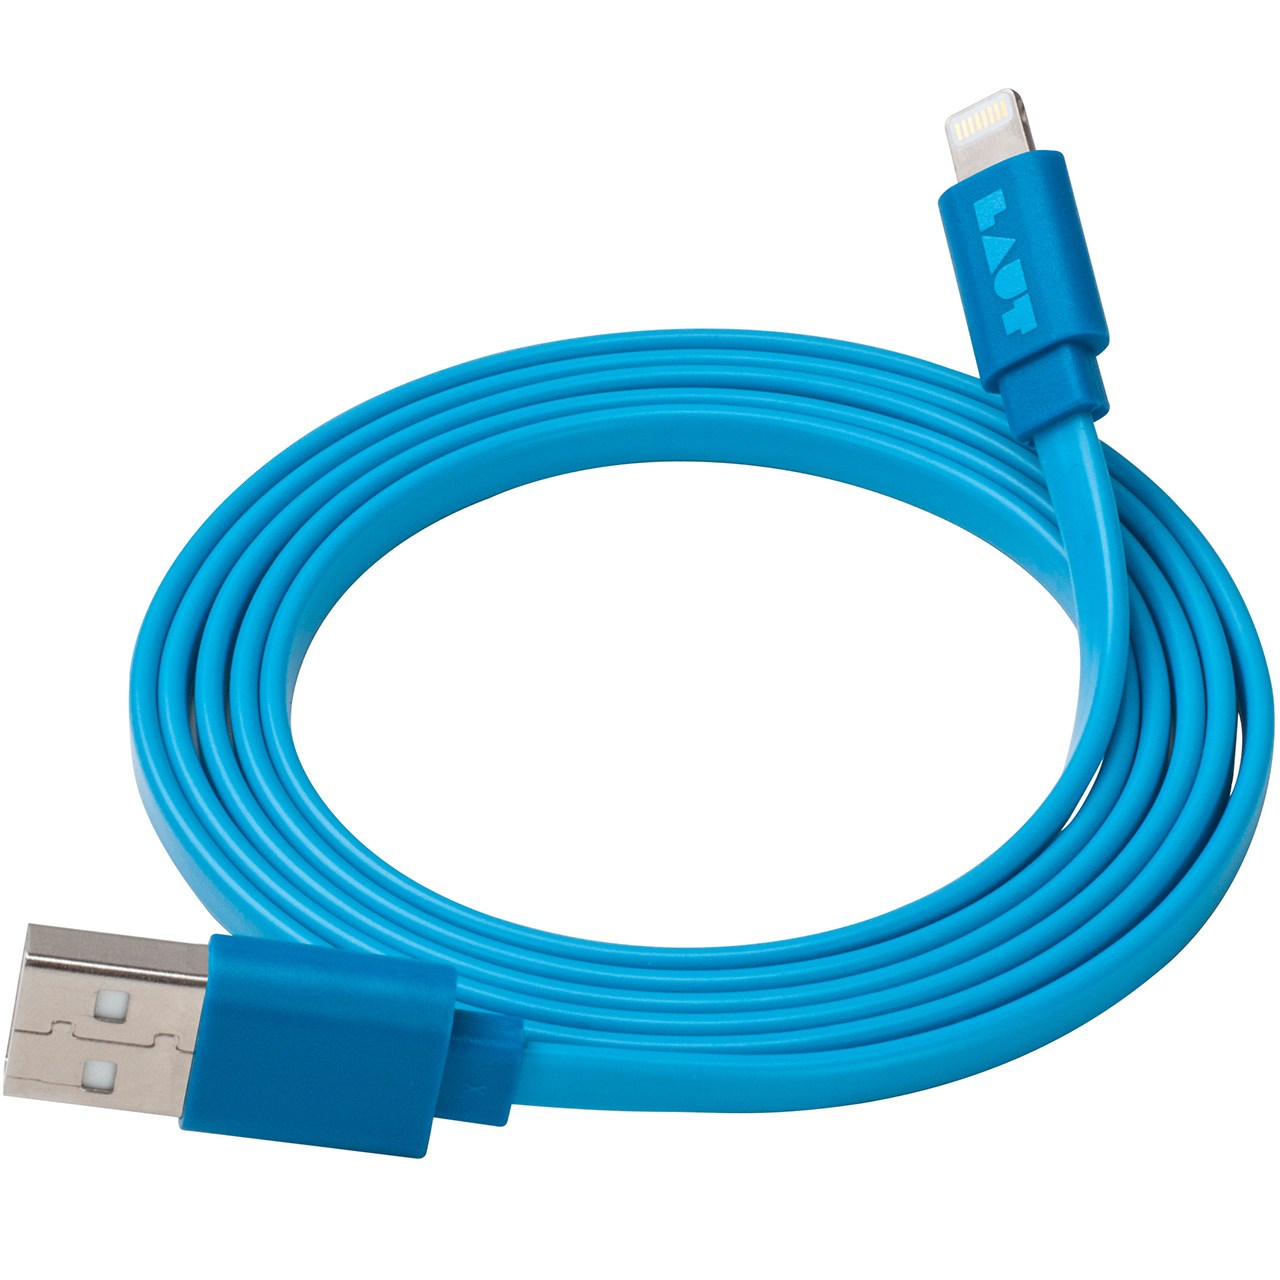 کابل تبدیل USB به لایتنینگ لاوت مدل Link طول 1.2 متر